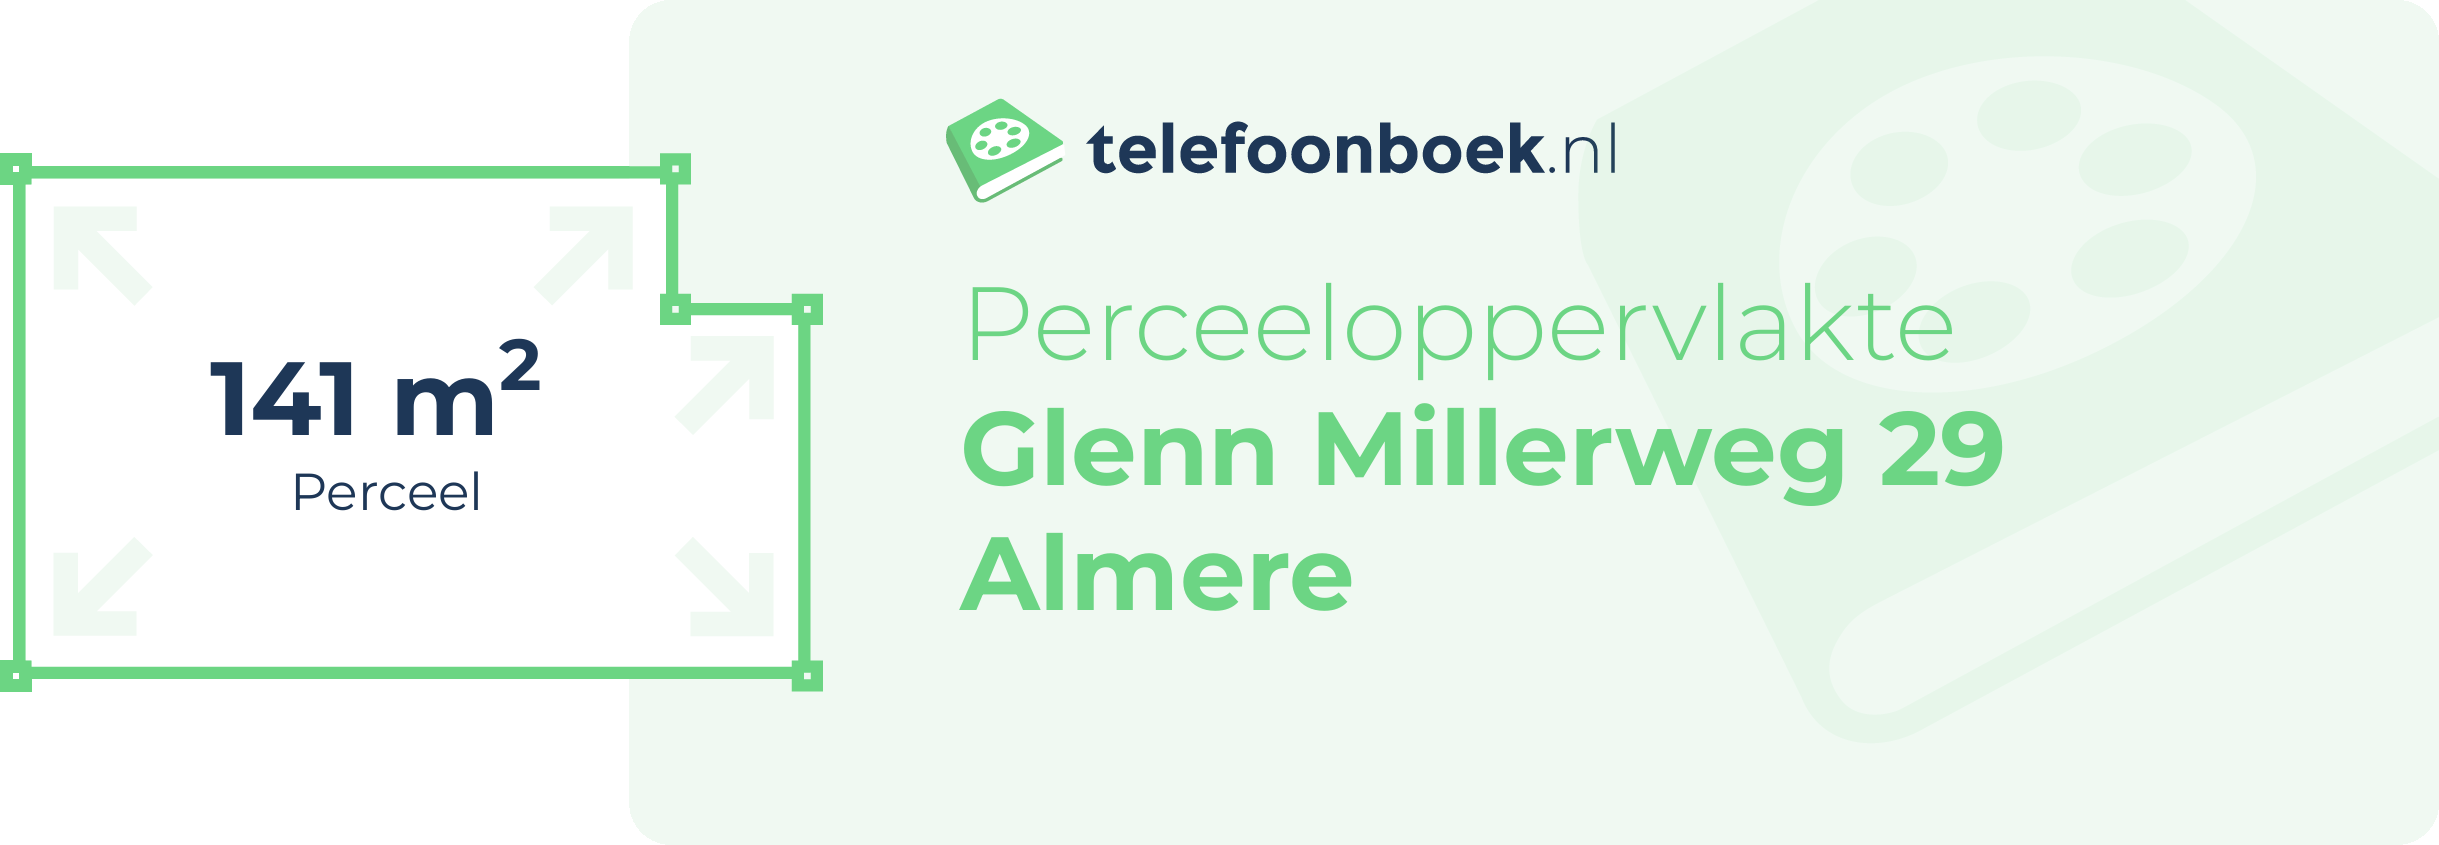 Perceeloppervlakte Glenn Millerweg 29 Almere